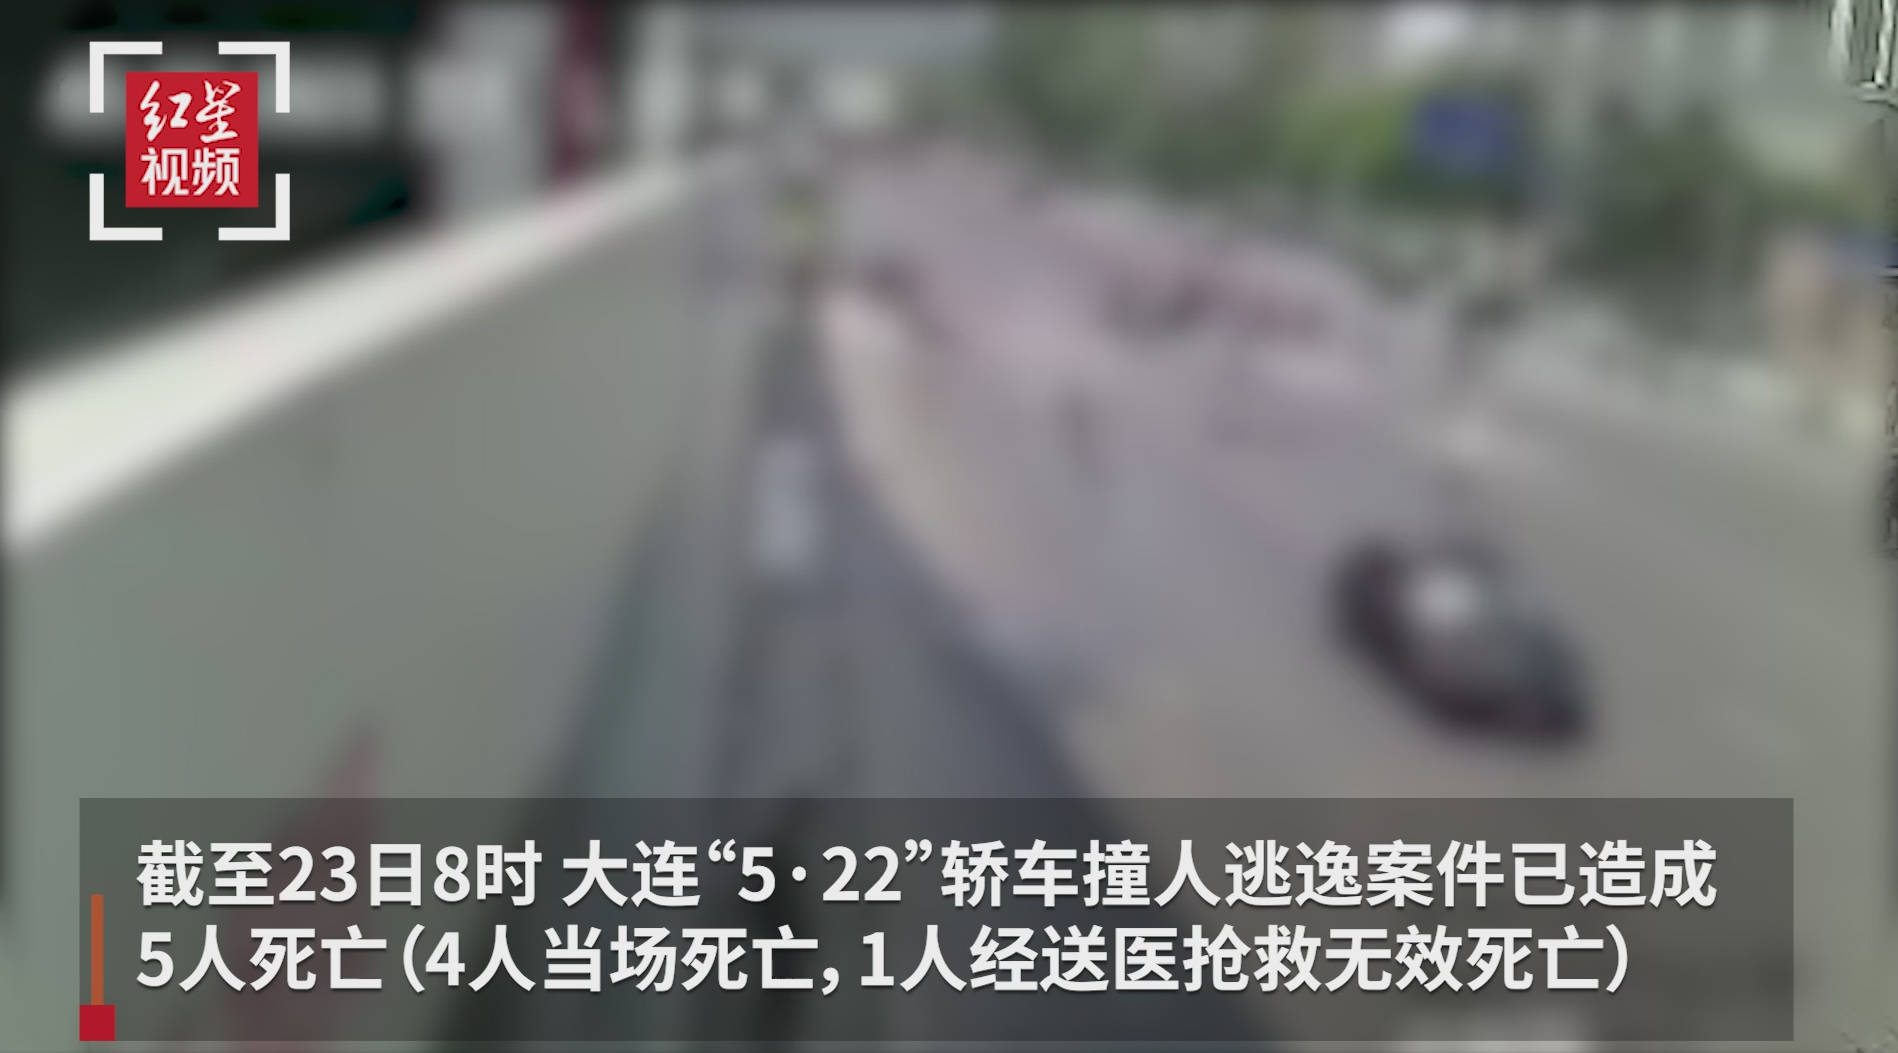 大连发生重大车祸 一路虎撞飞7名学生-搜狐汽车